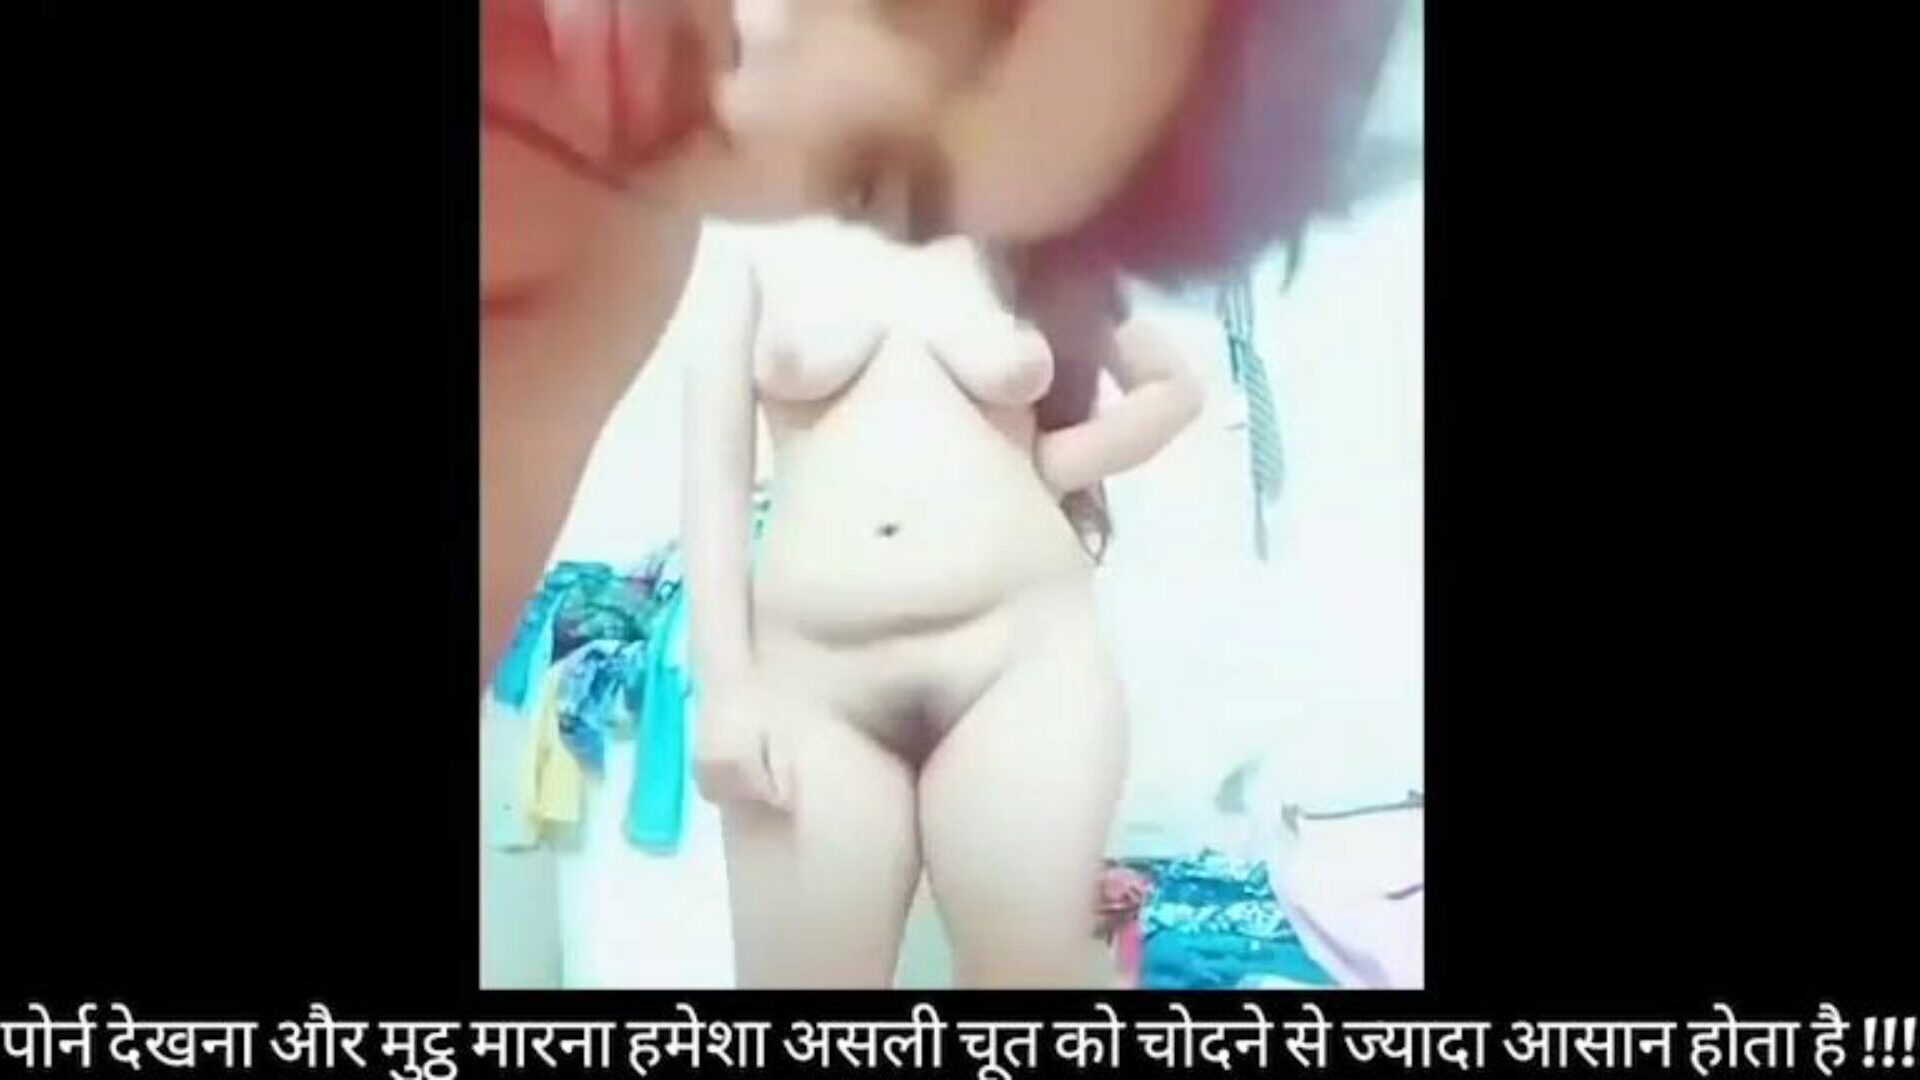 bangladesh søt collegejente har sex med bf's most good friend søt ludder collage jente knullet med kjæresten stiv